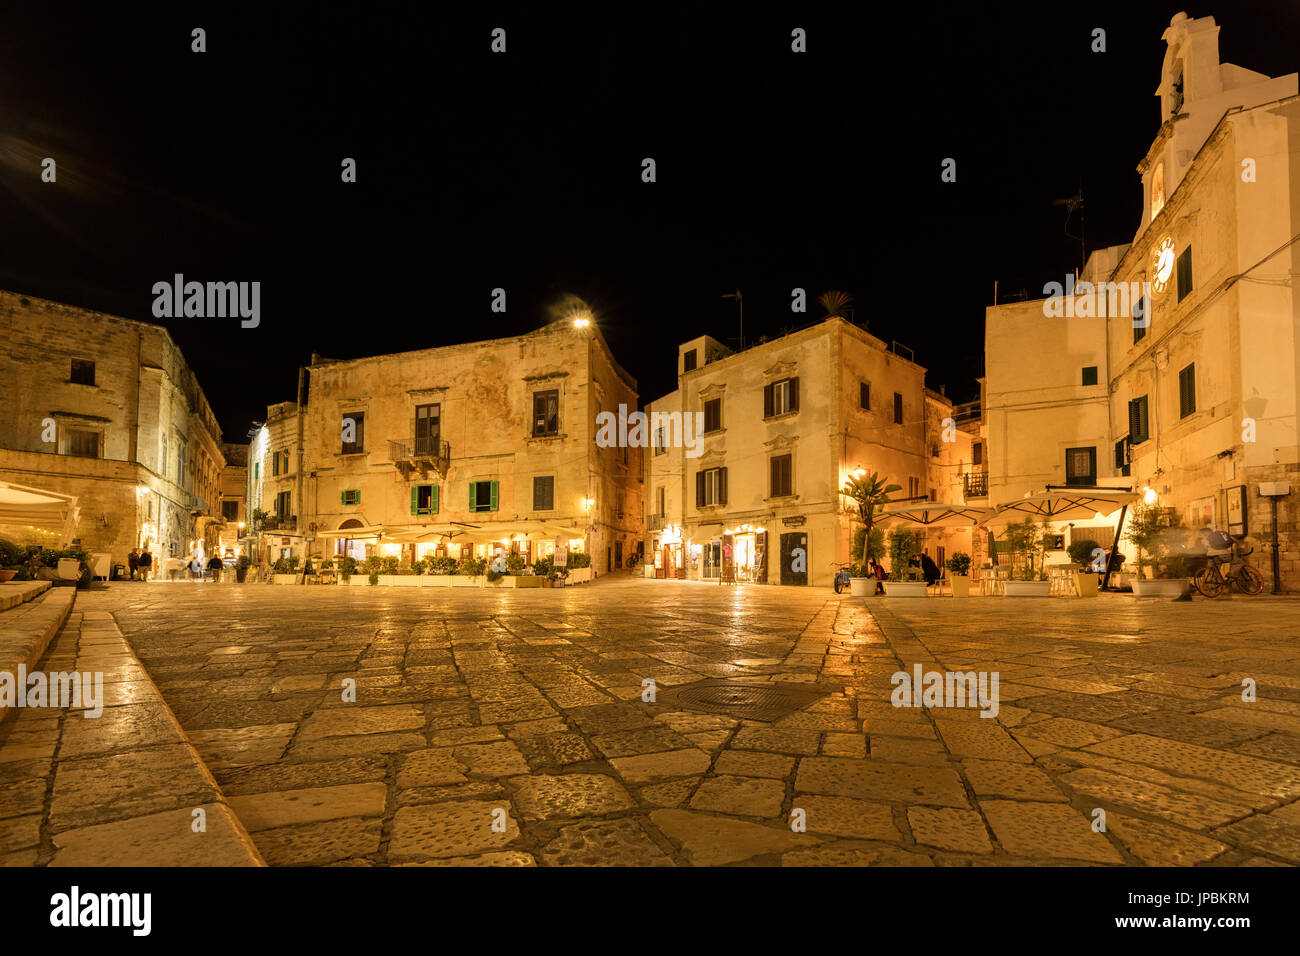 Vue de nuit sur les bâtiments historiques et des places de la vieille ville de Polignano a Mare, province de Bari, Pouilles Italie Europe Banque D'Images